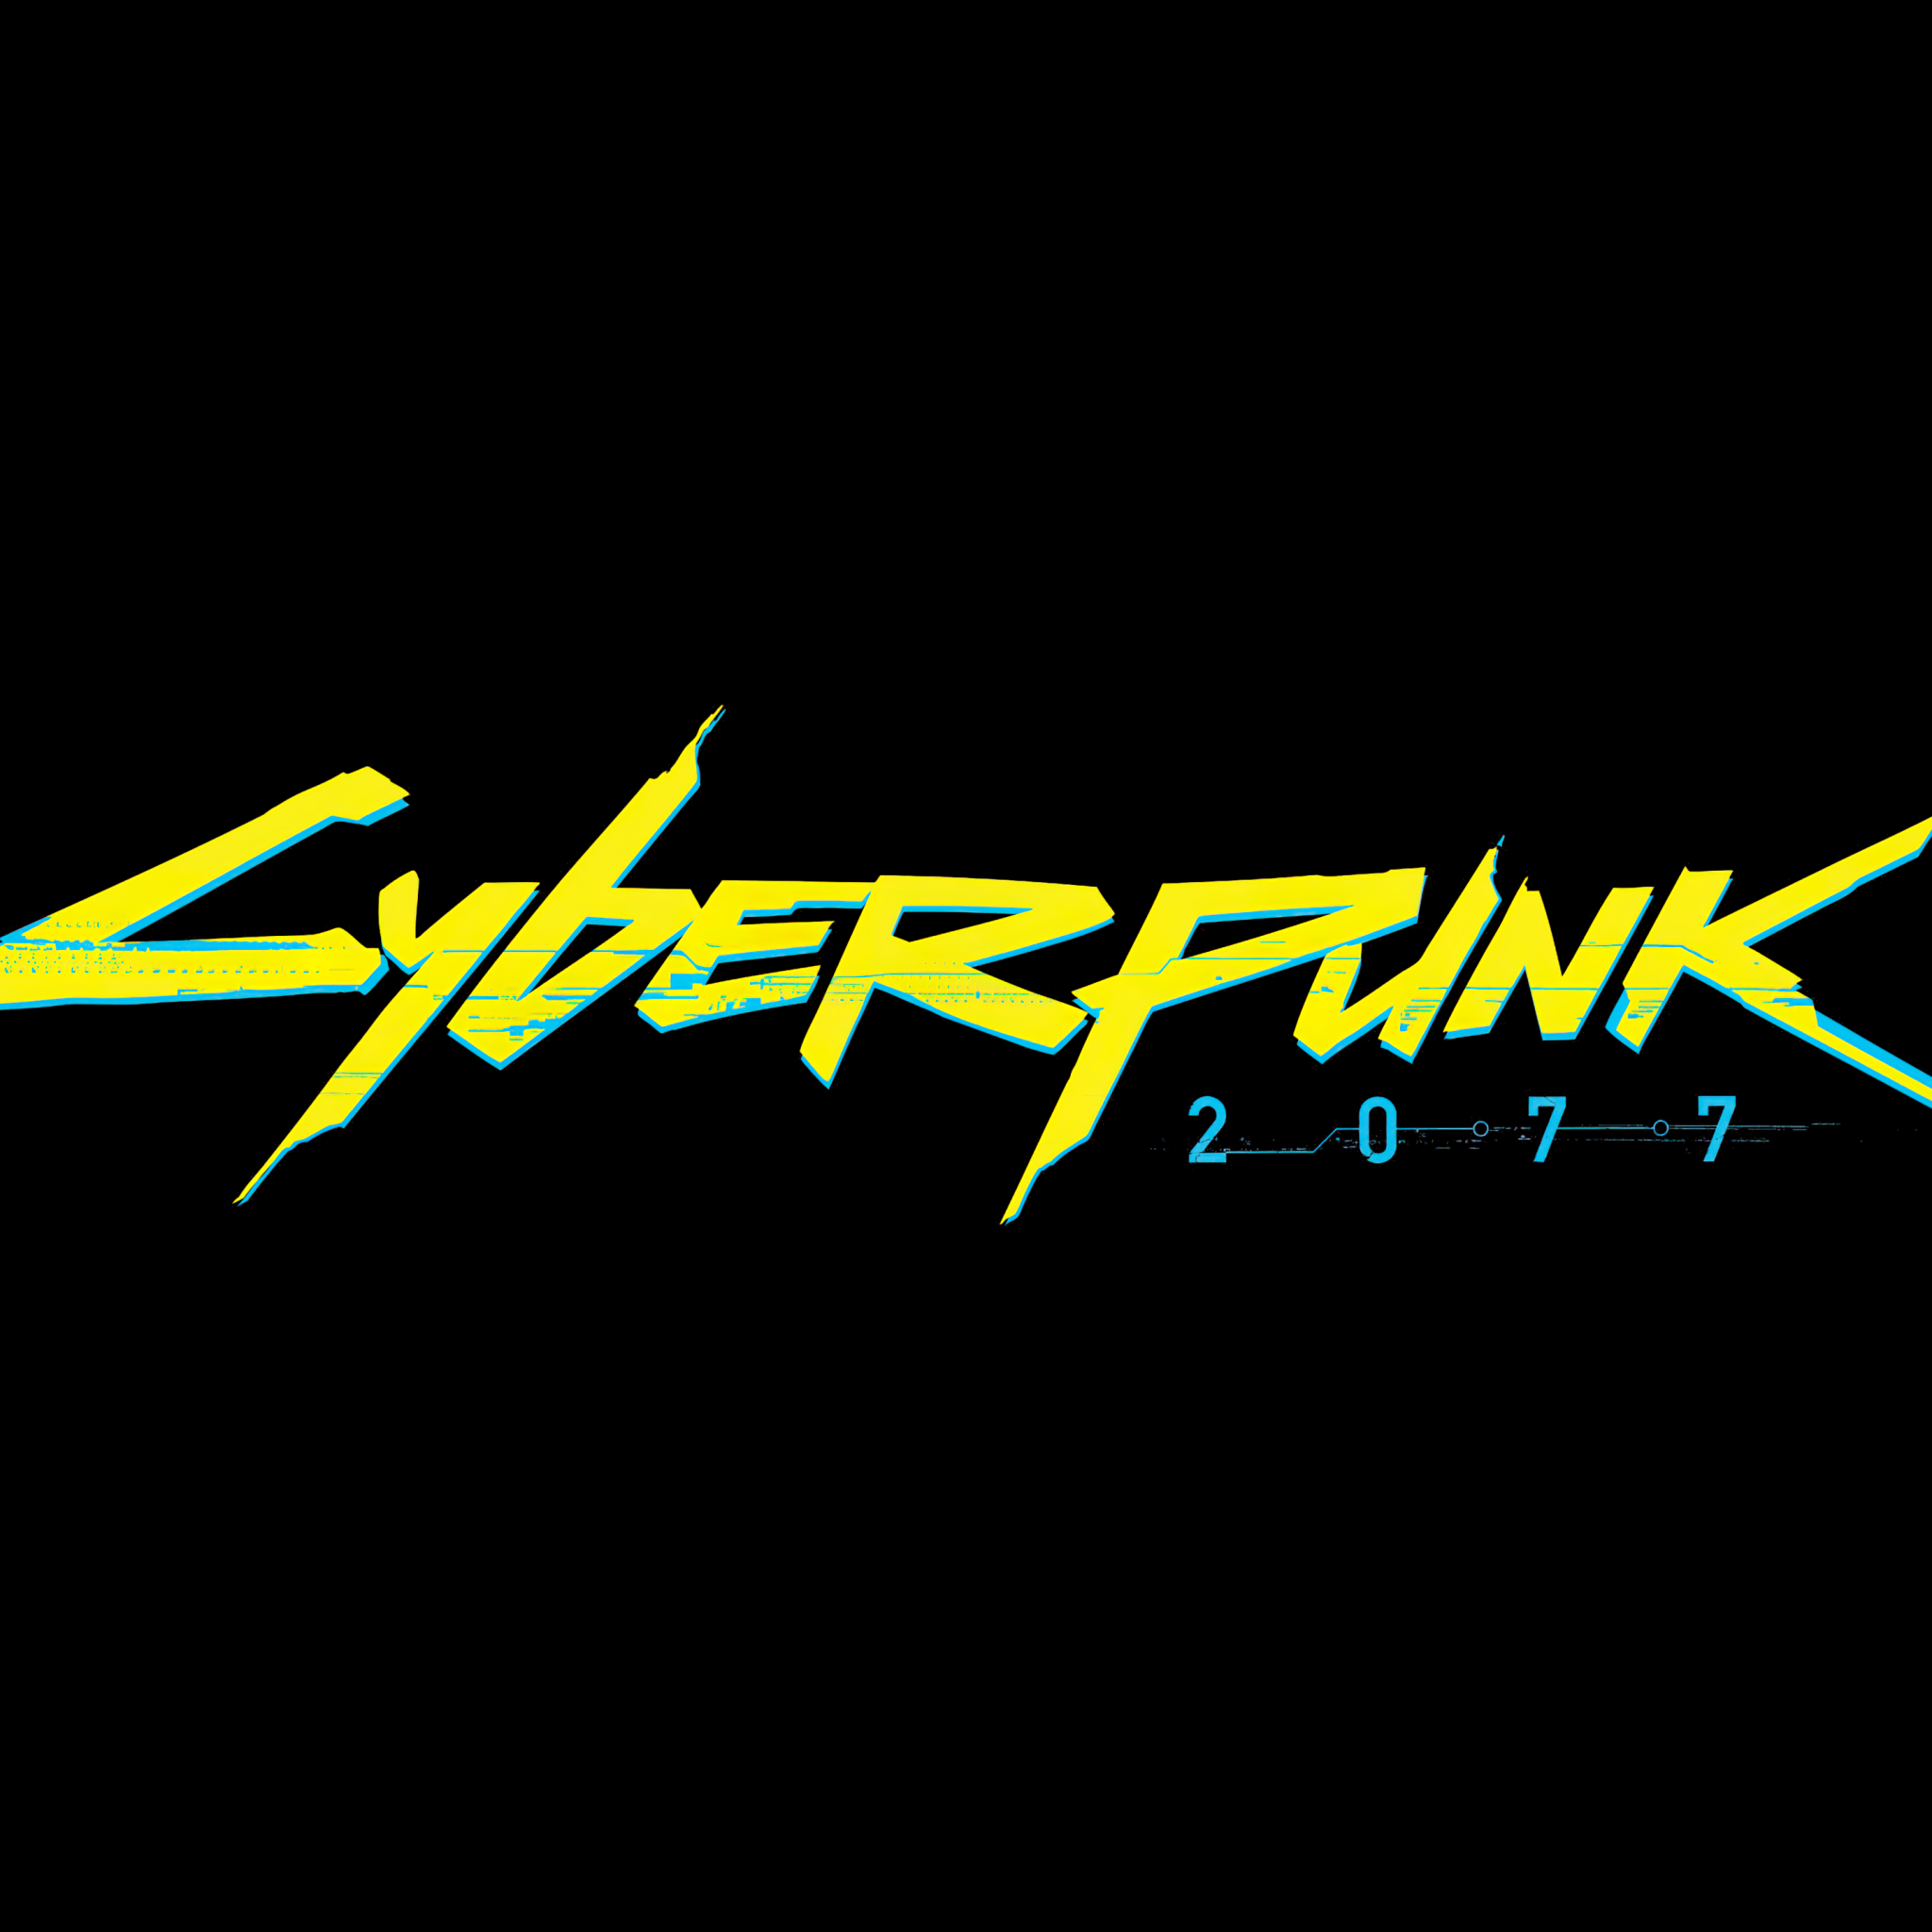 Cyberpunk gif logo фото 33